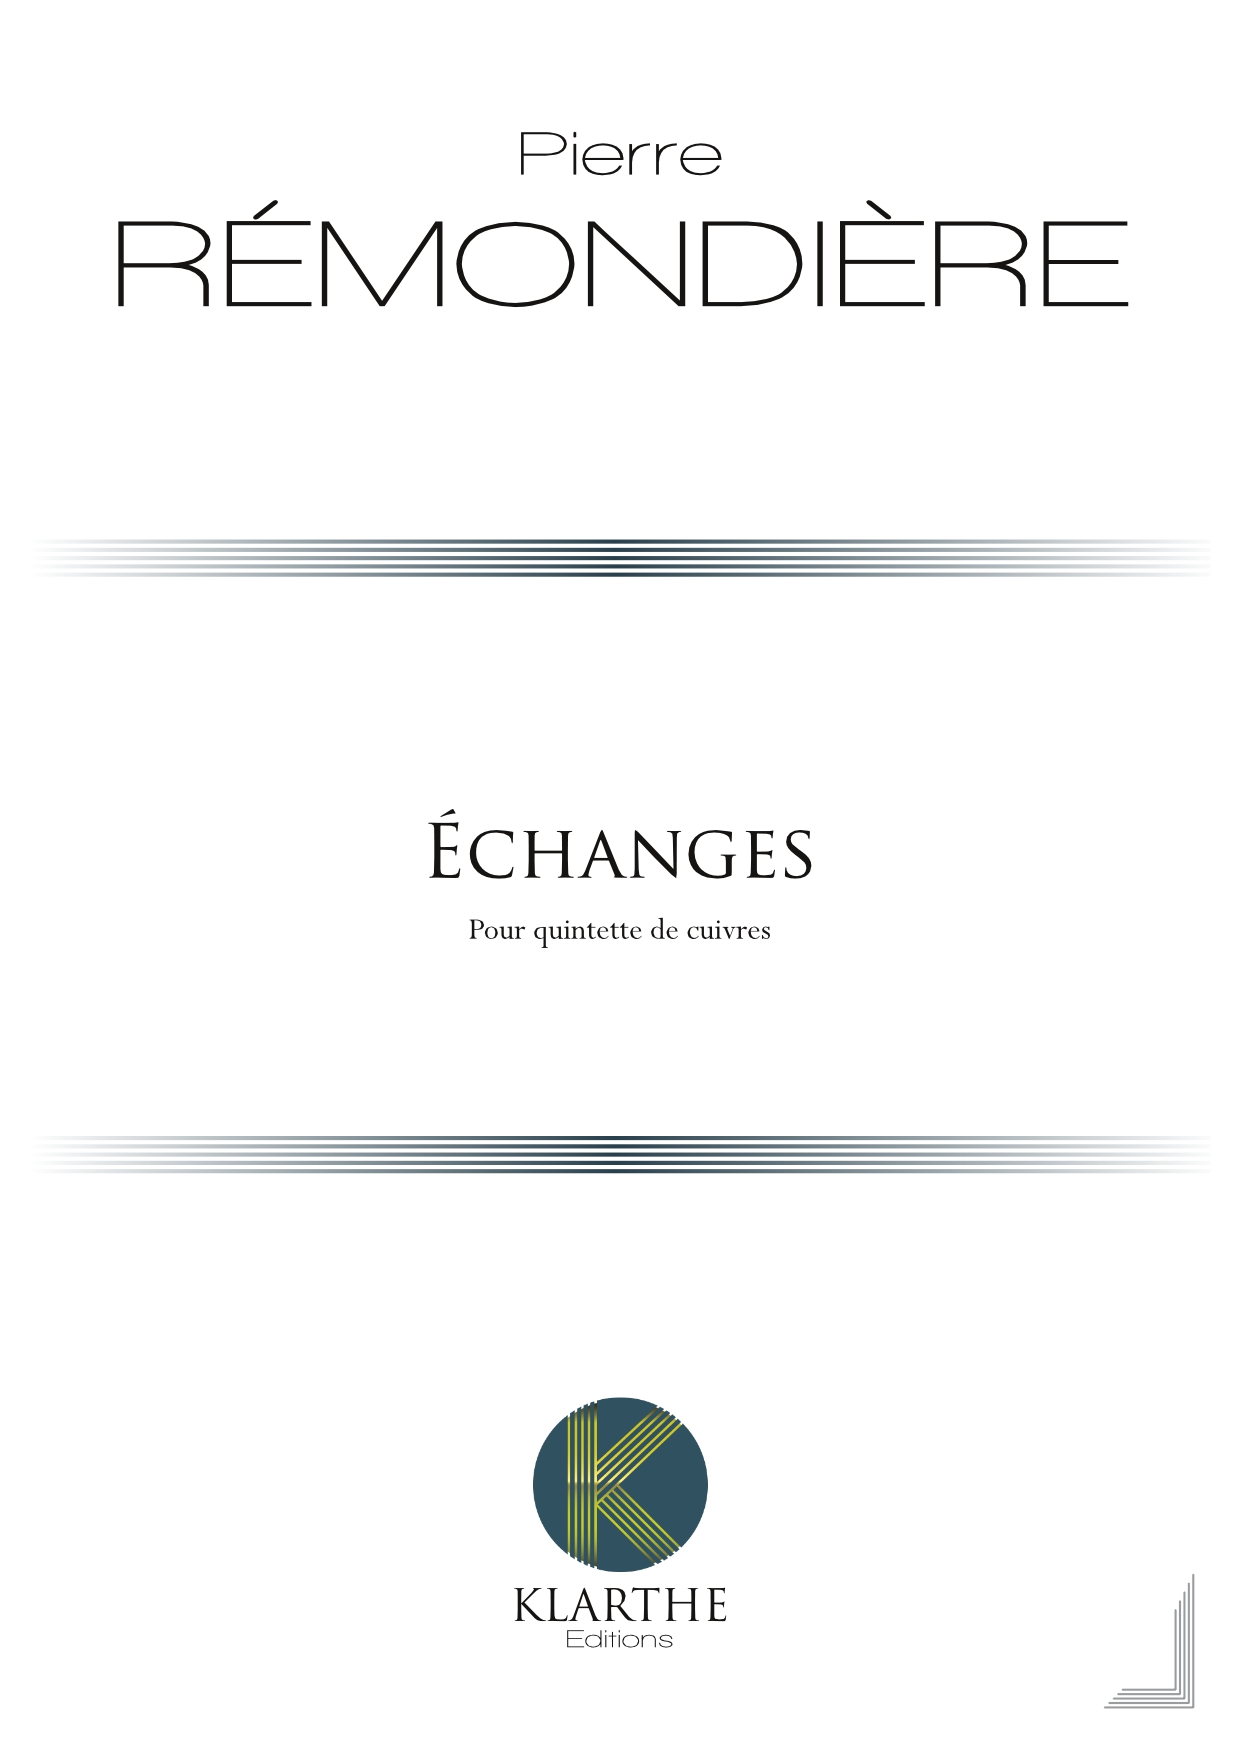 Echanges (REMONDIERE PIERRE)